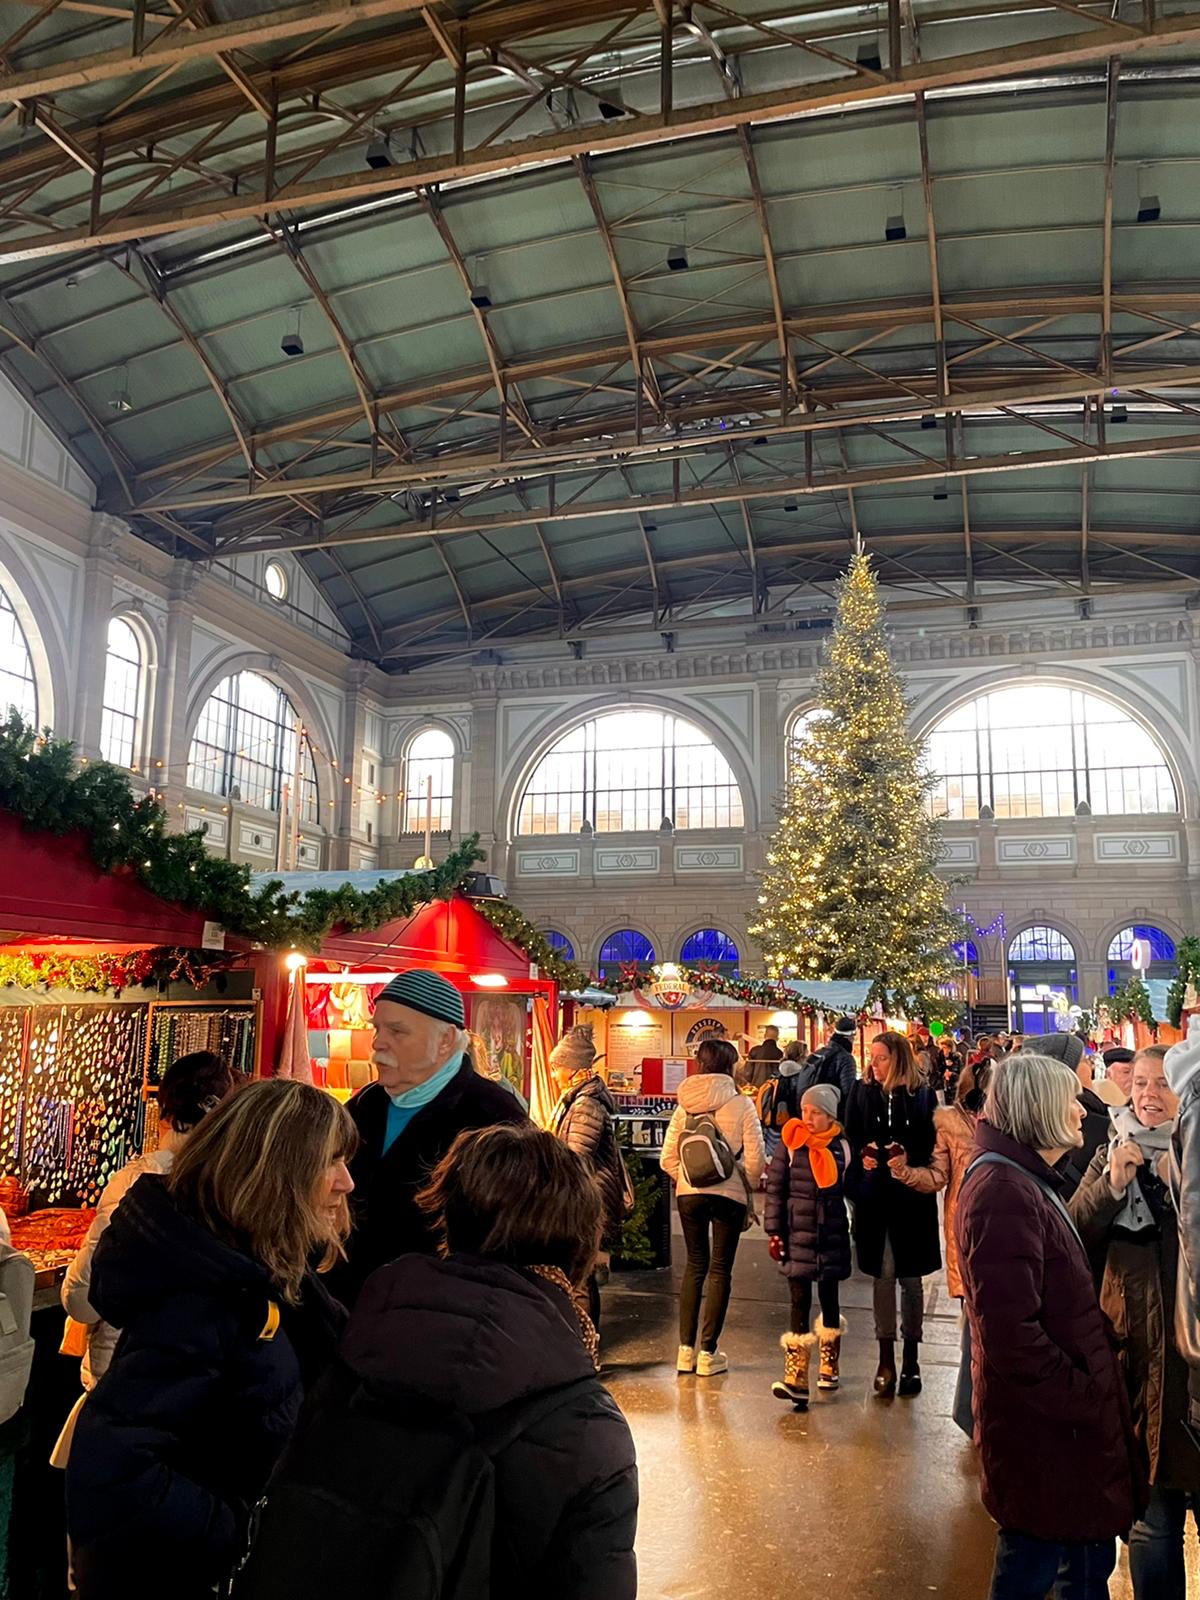 Zurich HB Christmas Market